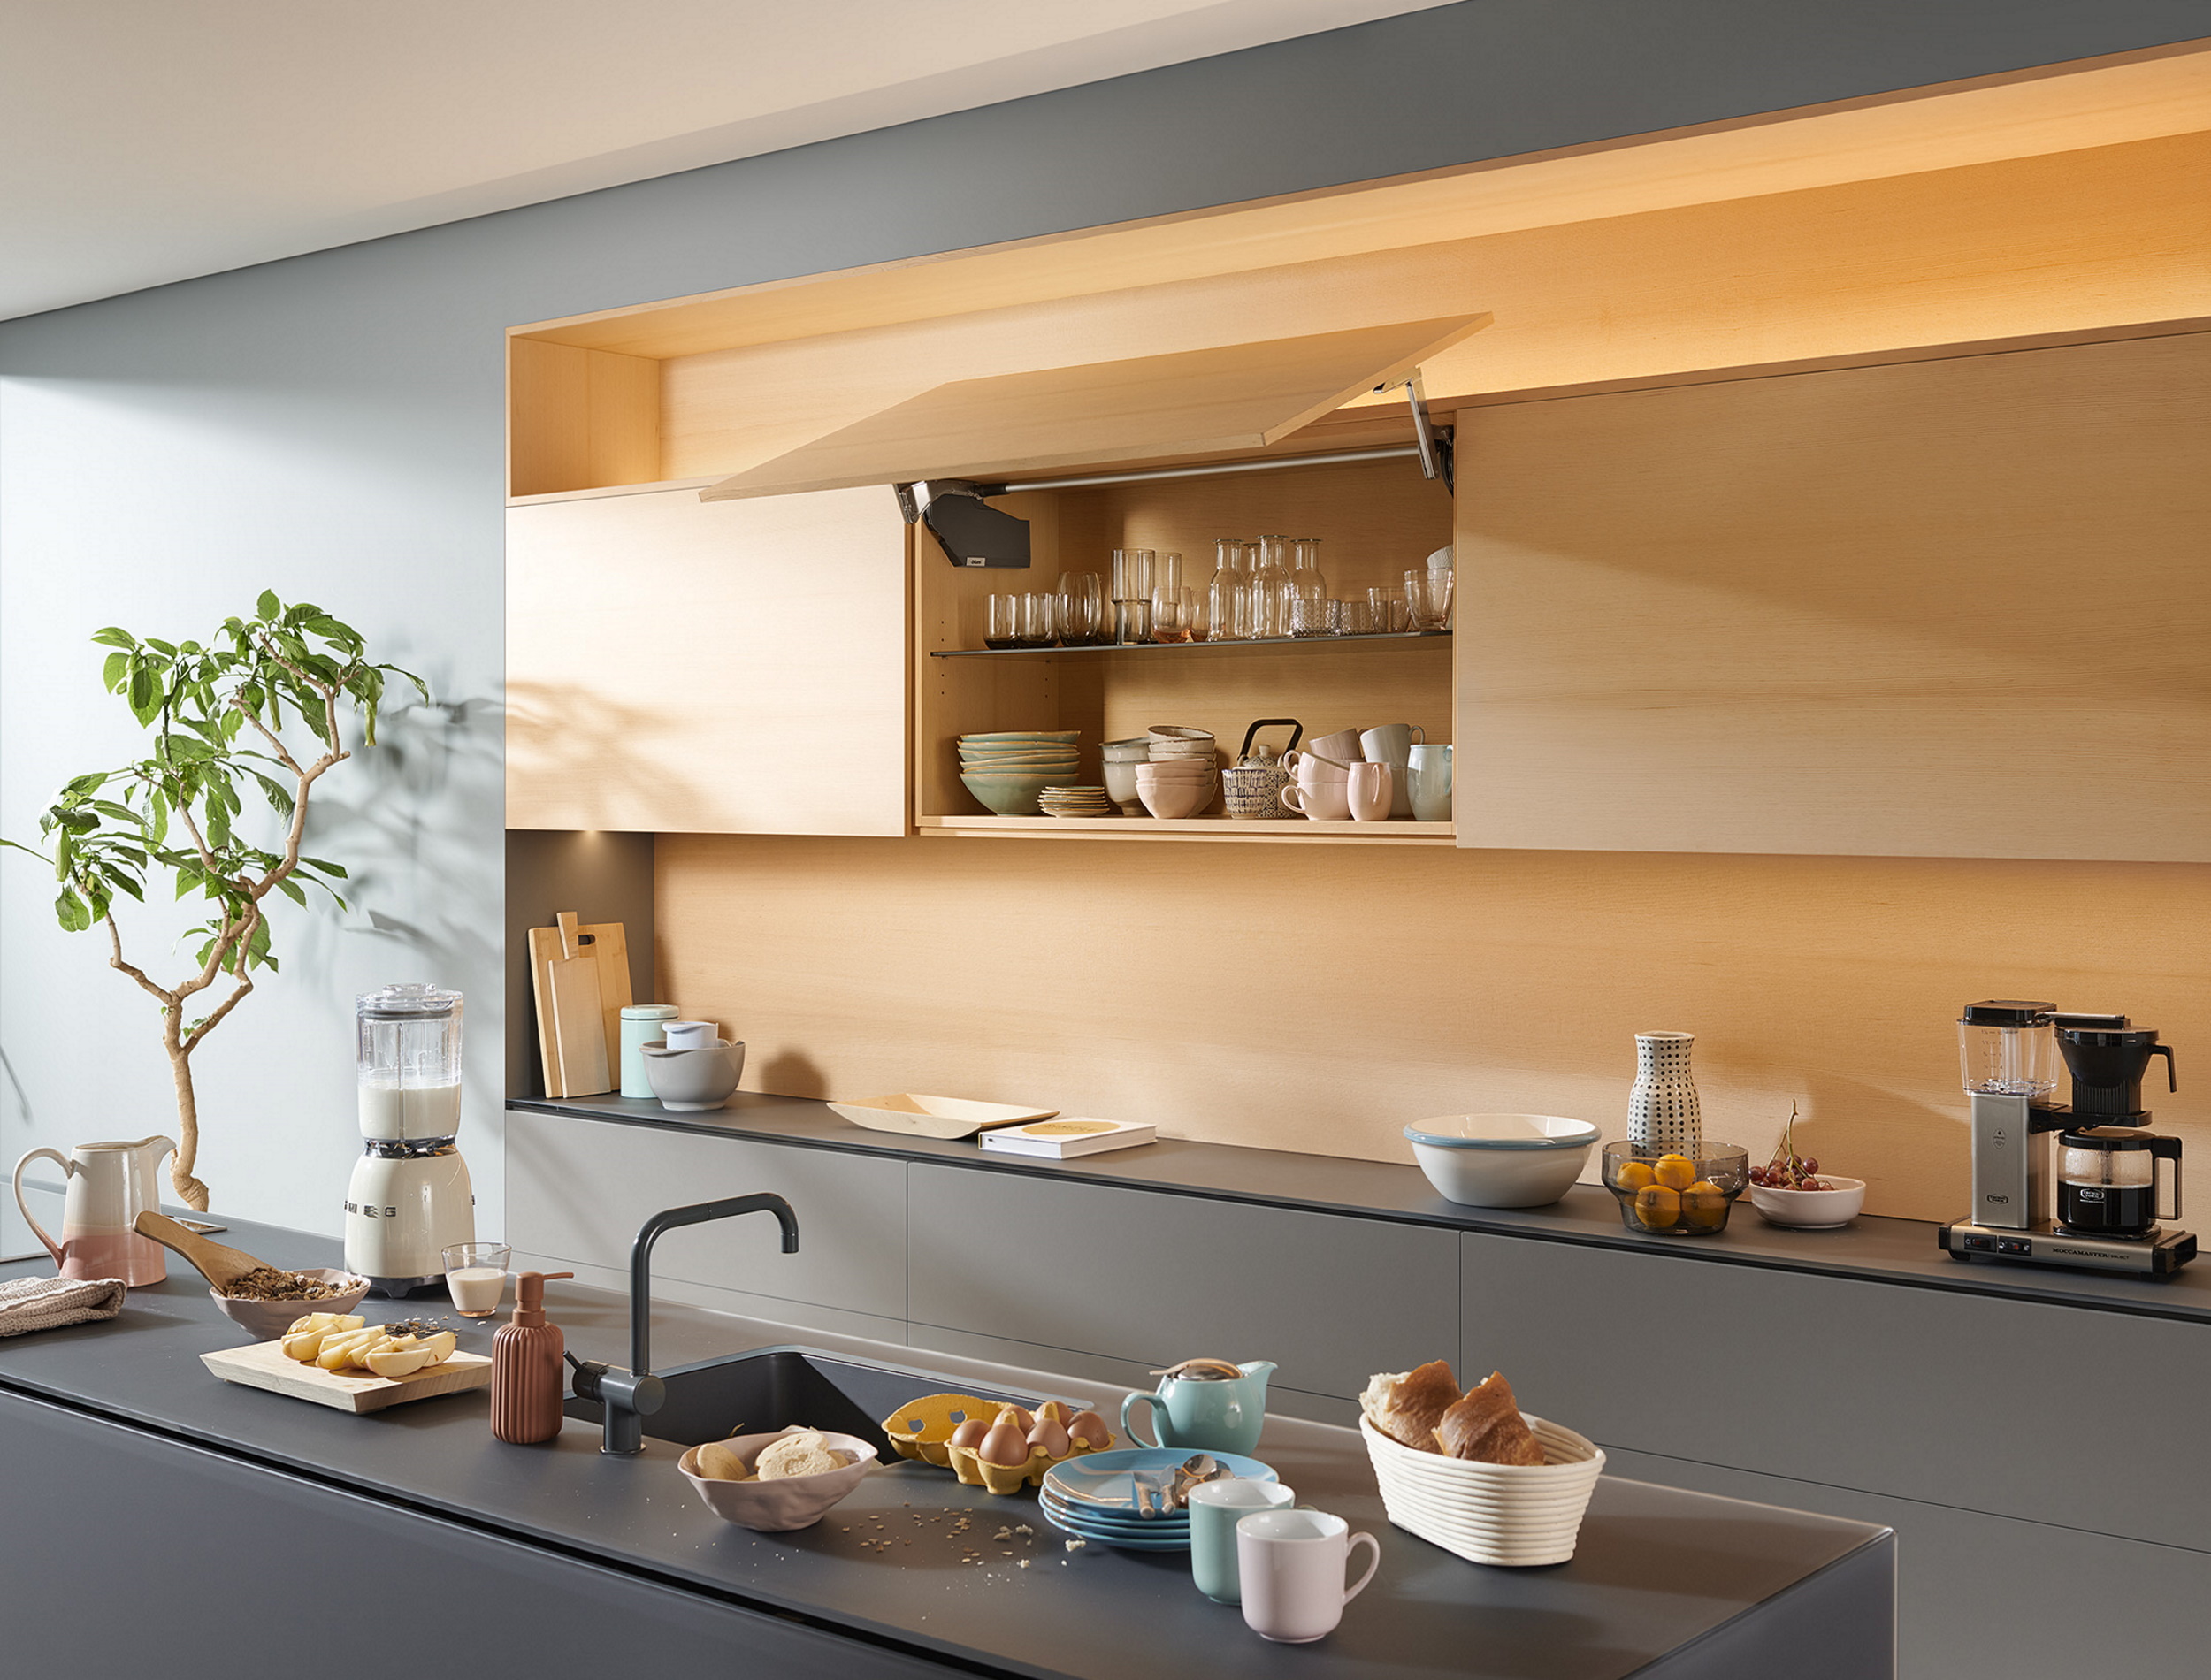 Thiết kế bếp chung cư hiện đại không thể thiếu những phụ kiện tủ bếp hiện đại